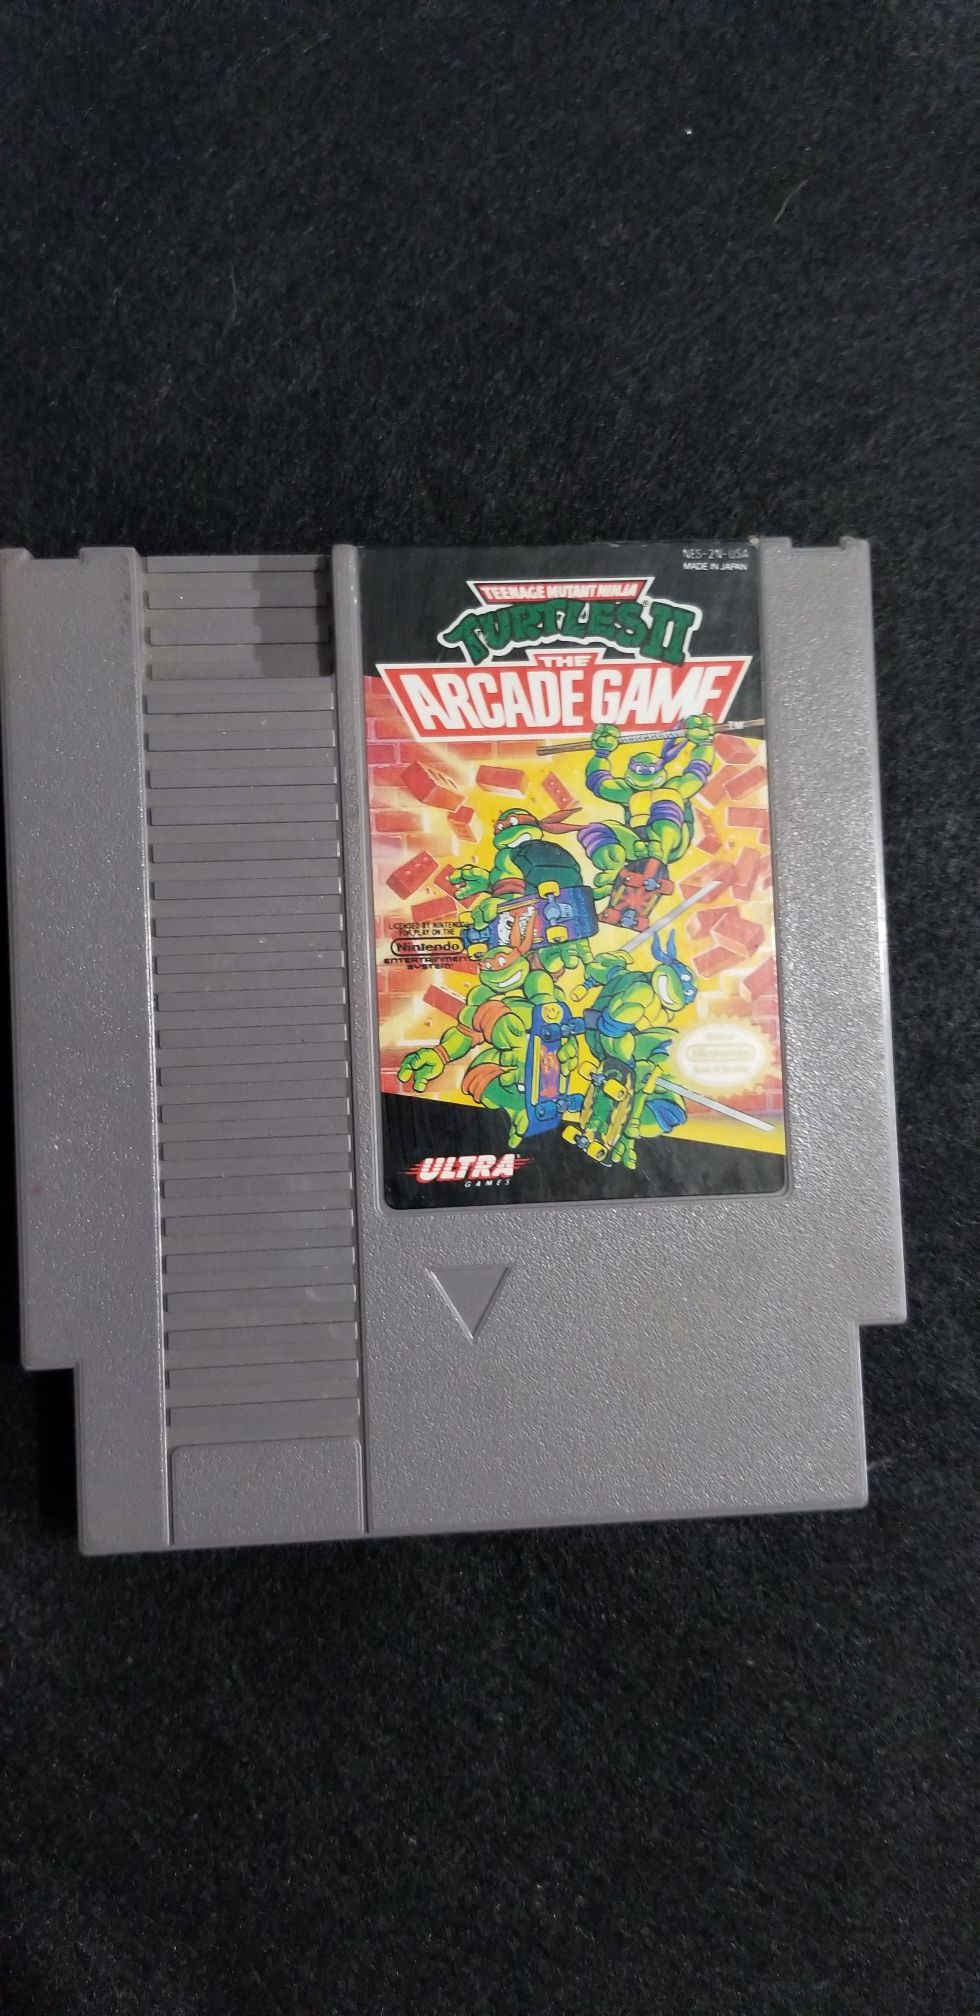 TMNT 2 arcade game NES